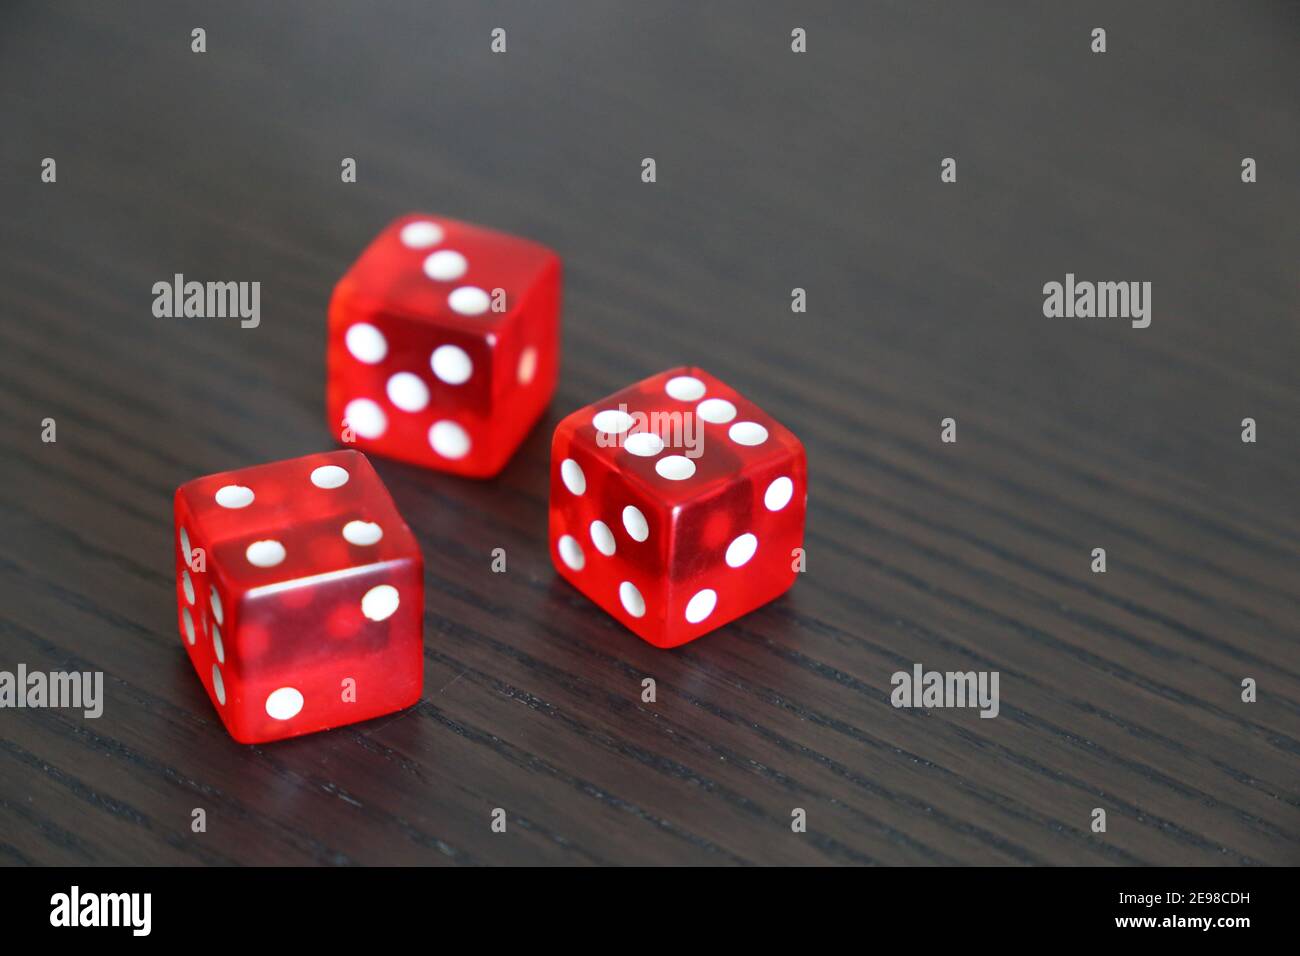 Rote Würfel auf dunklem Holztisch. Hintergrund für Casino-Spiele, Glücksspiel, Glück oder Zufälligkeit Stockfoto